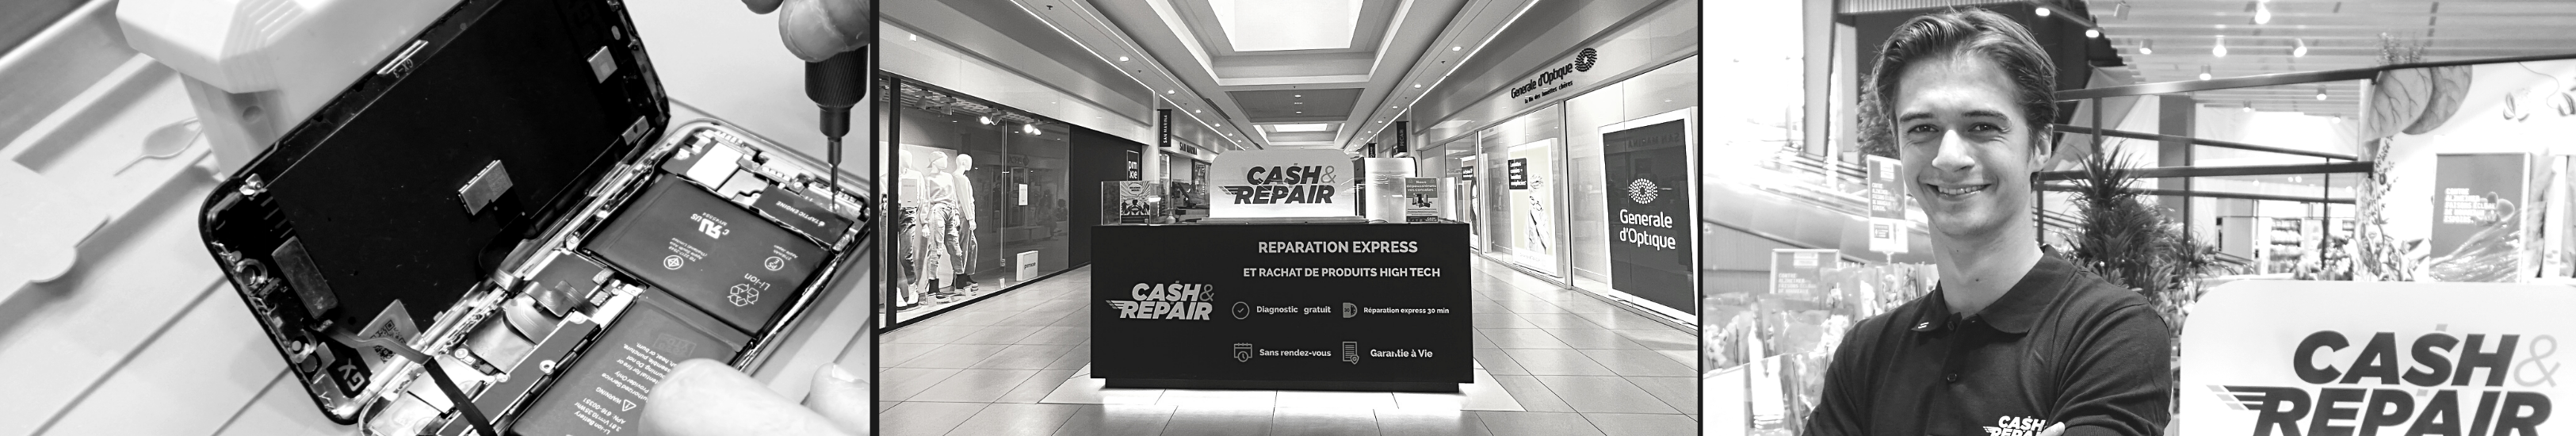 - Atelier de réparation Cash and Repair Saint-Nazaire